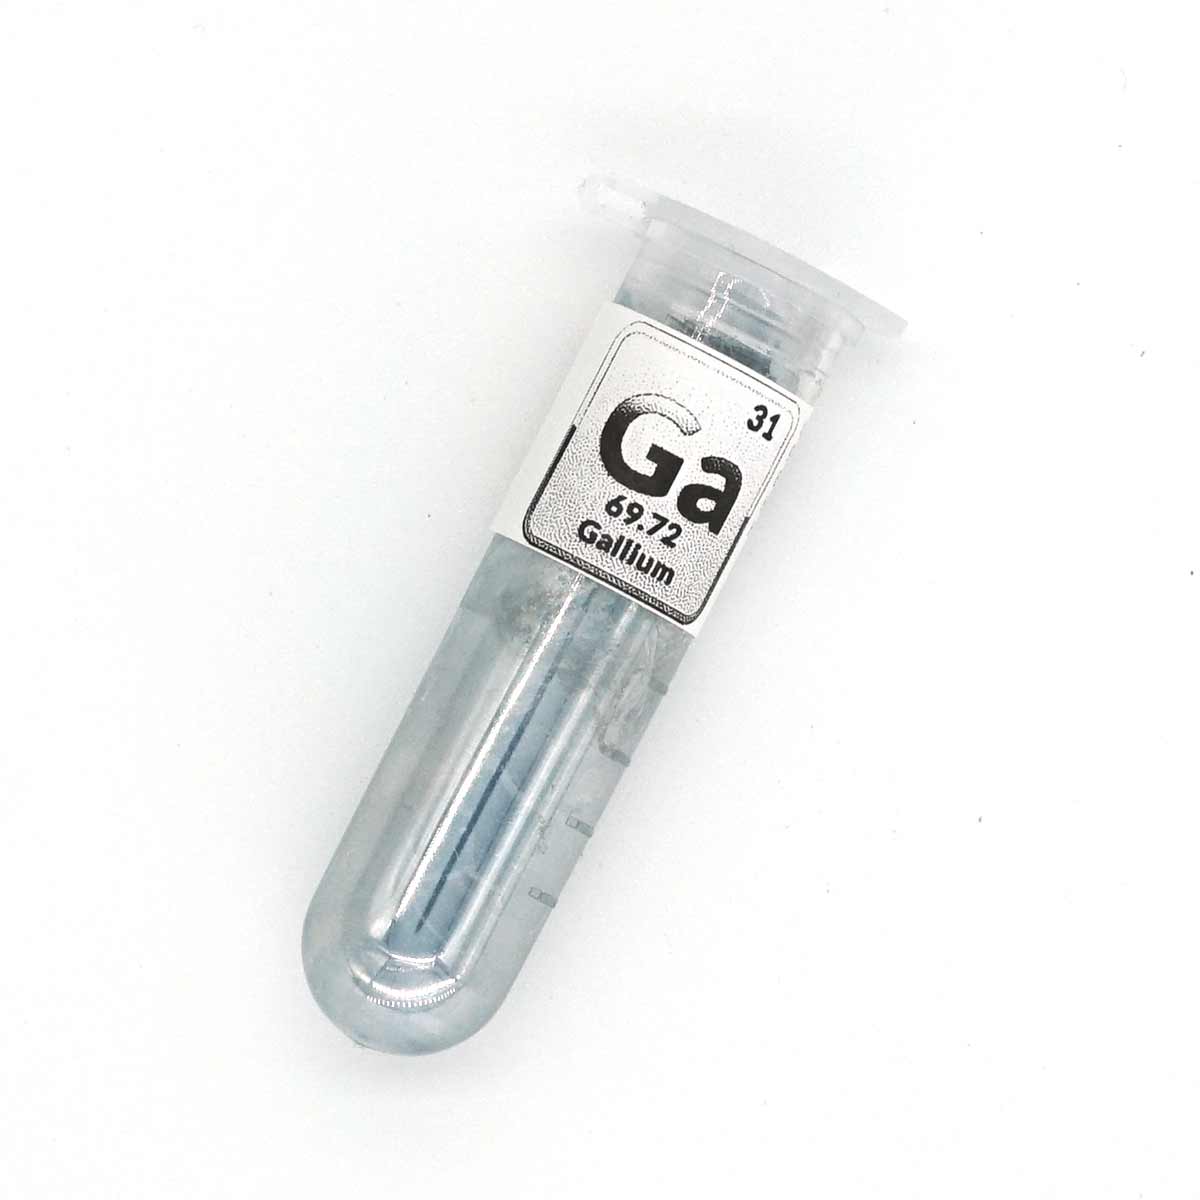 Gallium 99.99% 4N Ga 31 liquid metal (a 20g)